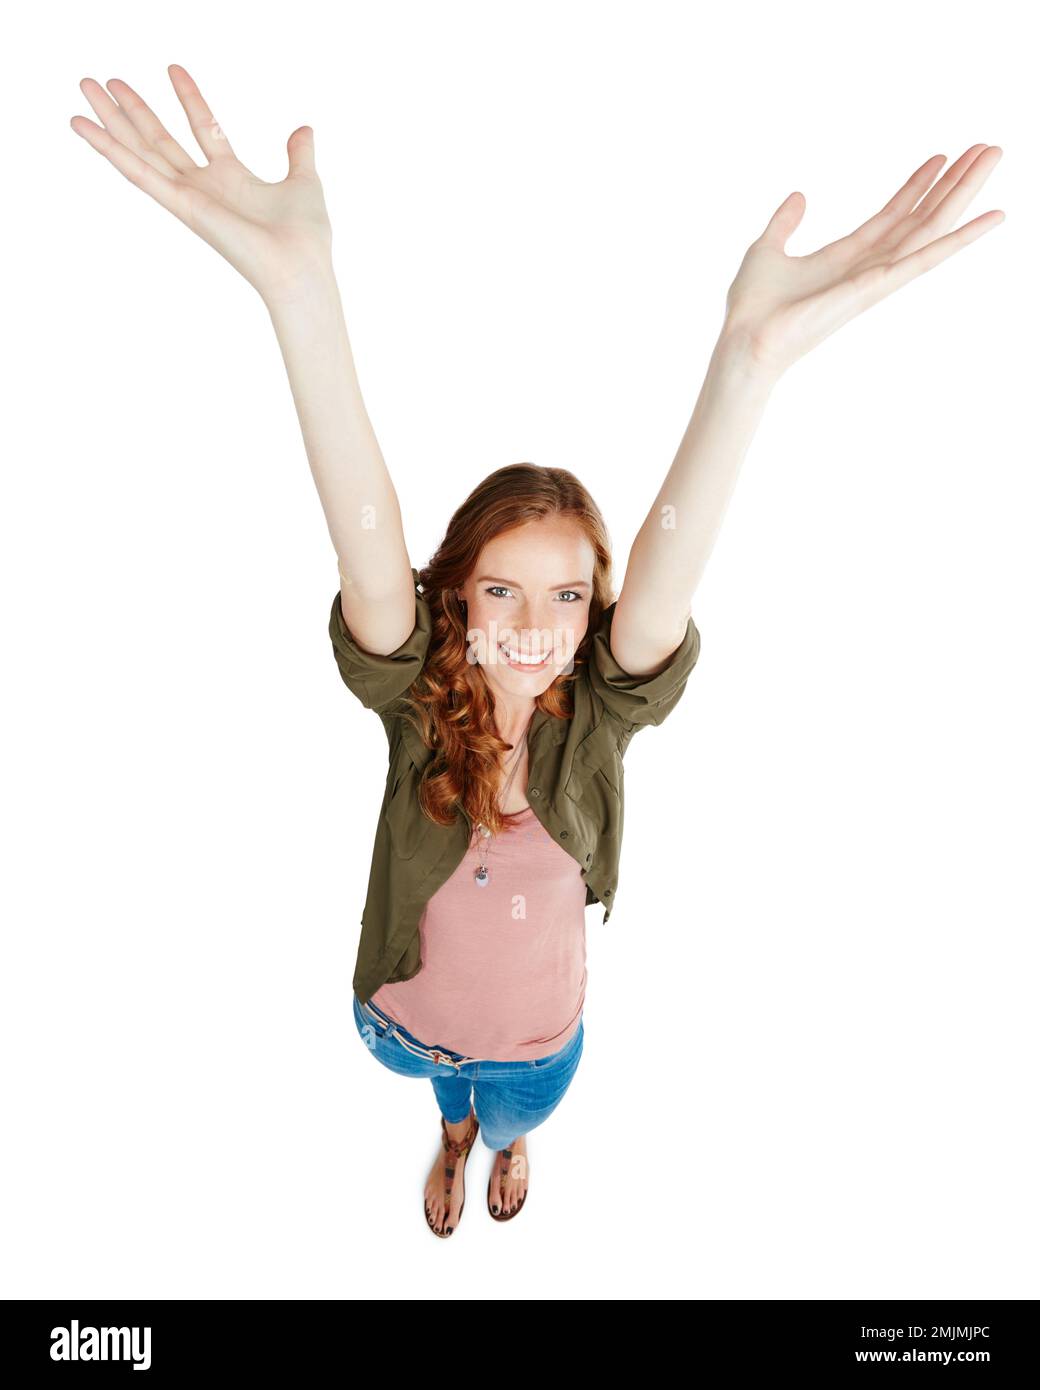 Nimm die Hände hoch, als wäre es dir egal. Eine junge Frau mit erhobenen Armen vor weißem Hintergrund. Stockfoto